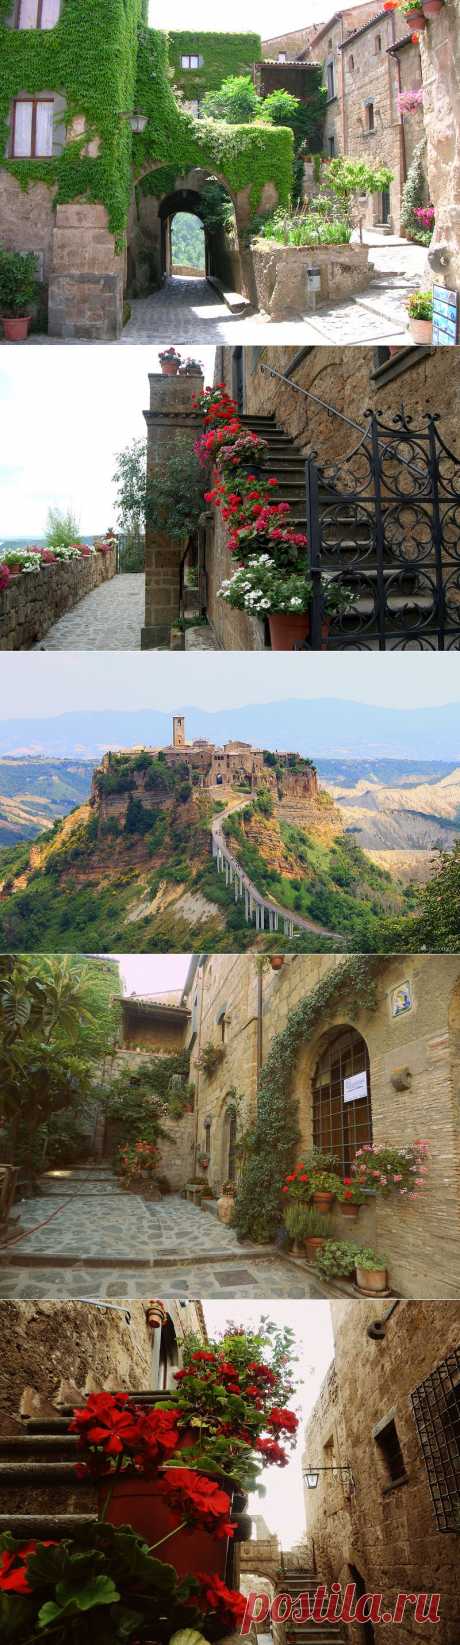 Умирающий и красивый город - Чивита ди Баньореджо. Италия.